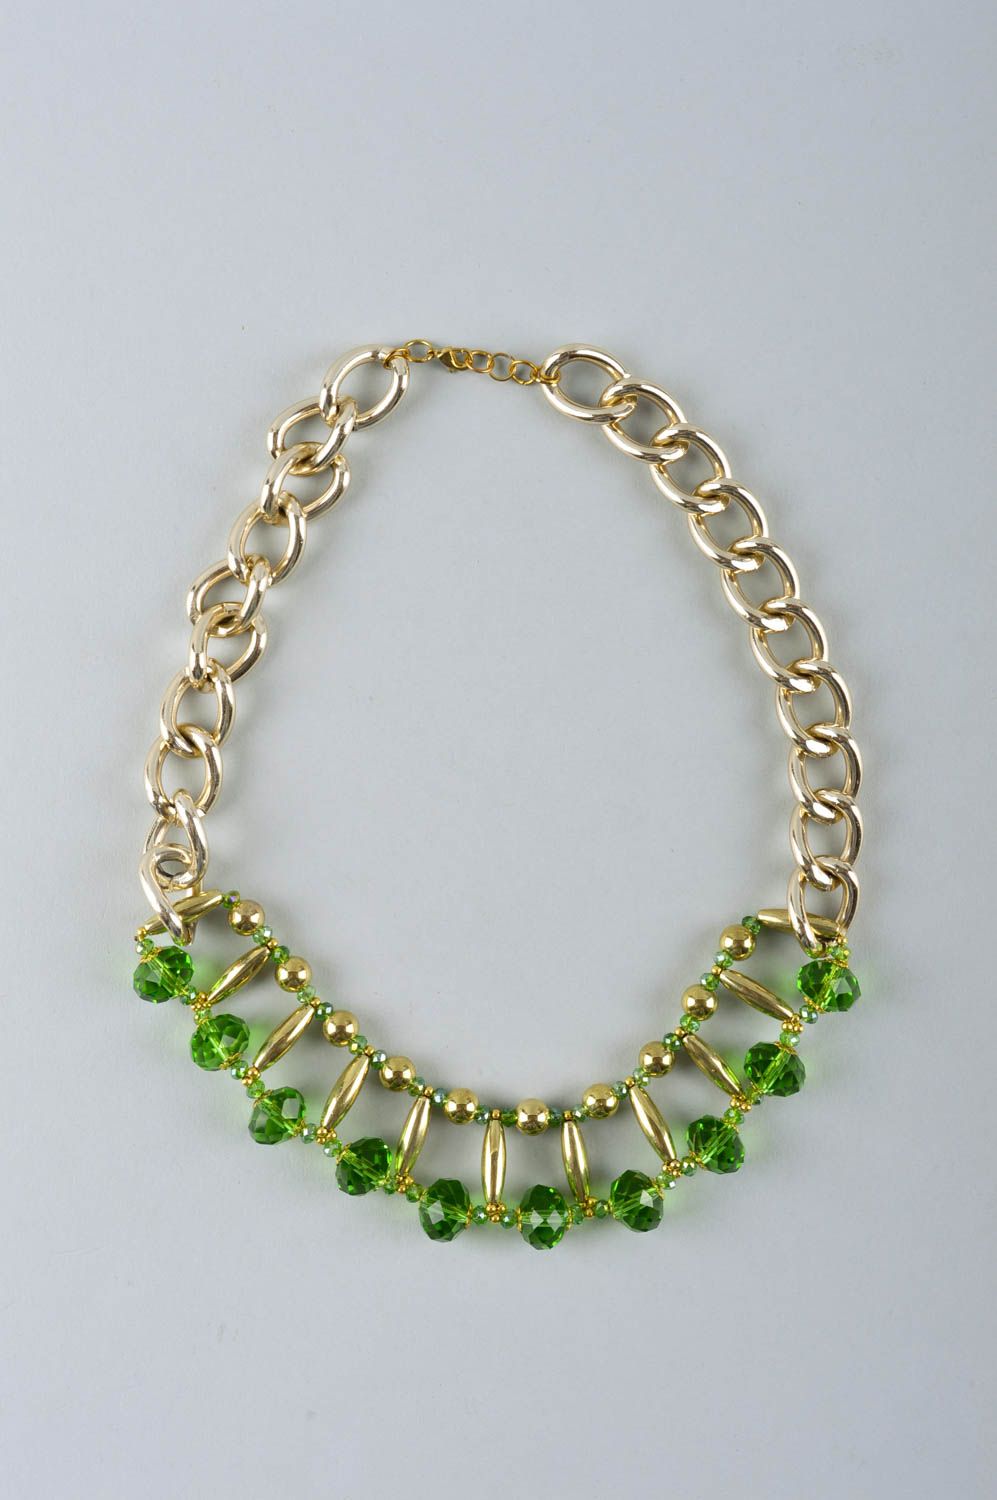 Collier fantaisie Accessoire fait main en métal et cristaux verts Cadeau femme photo 1